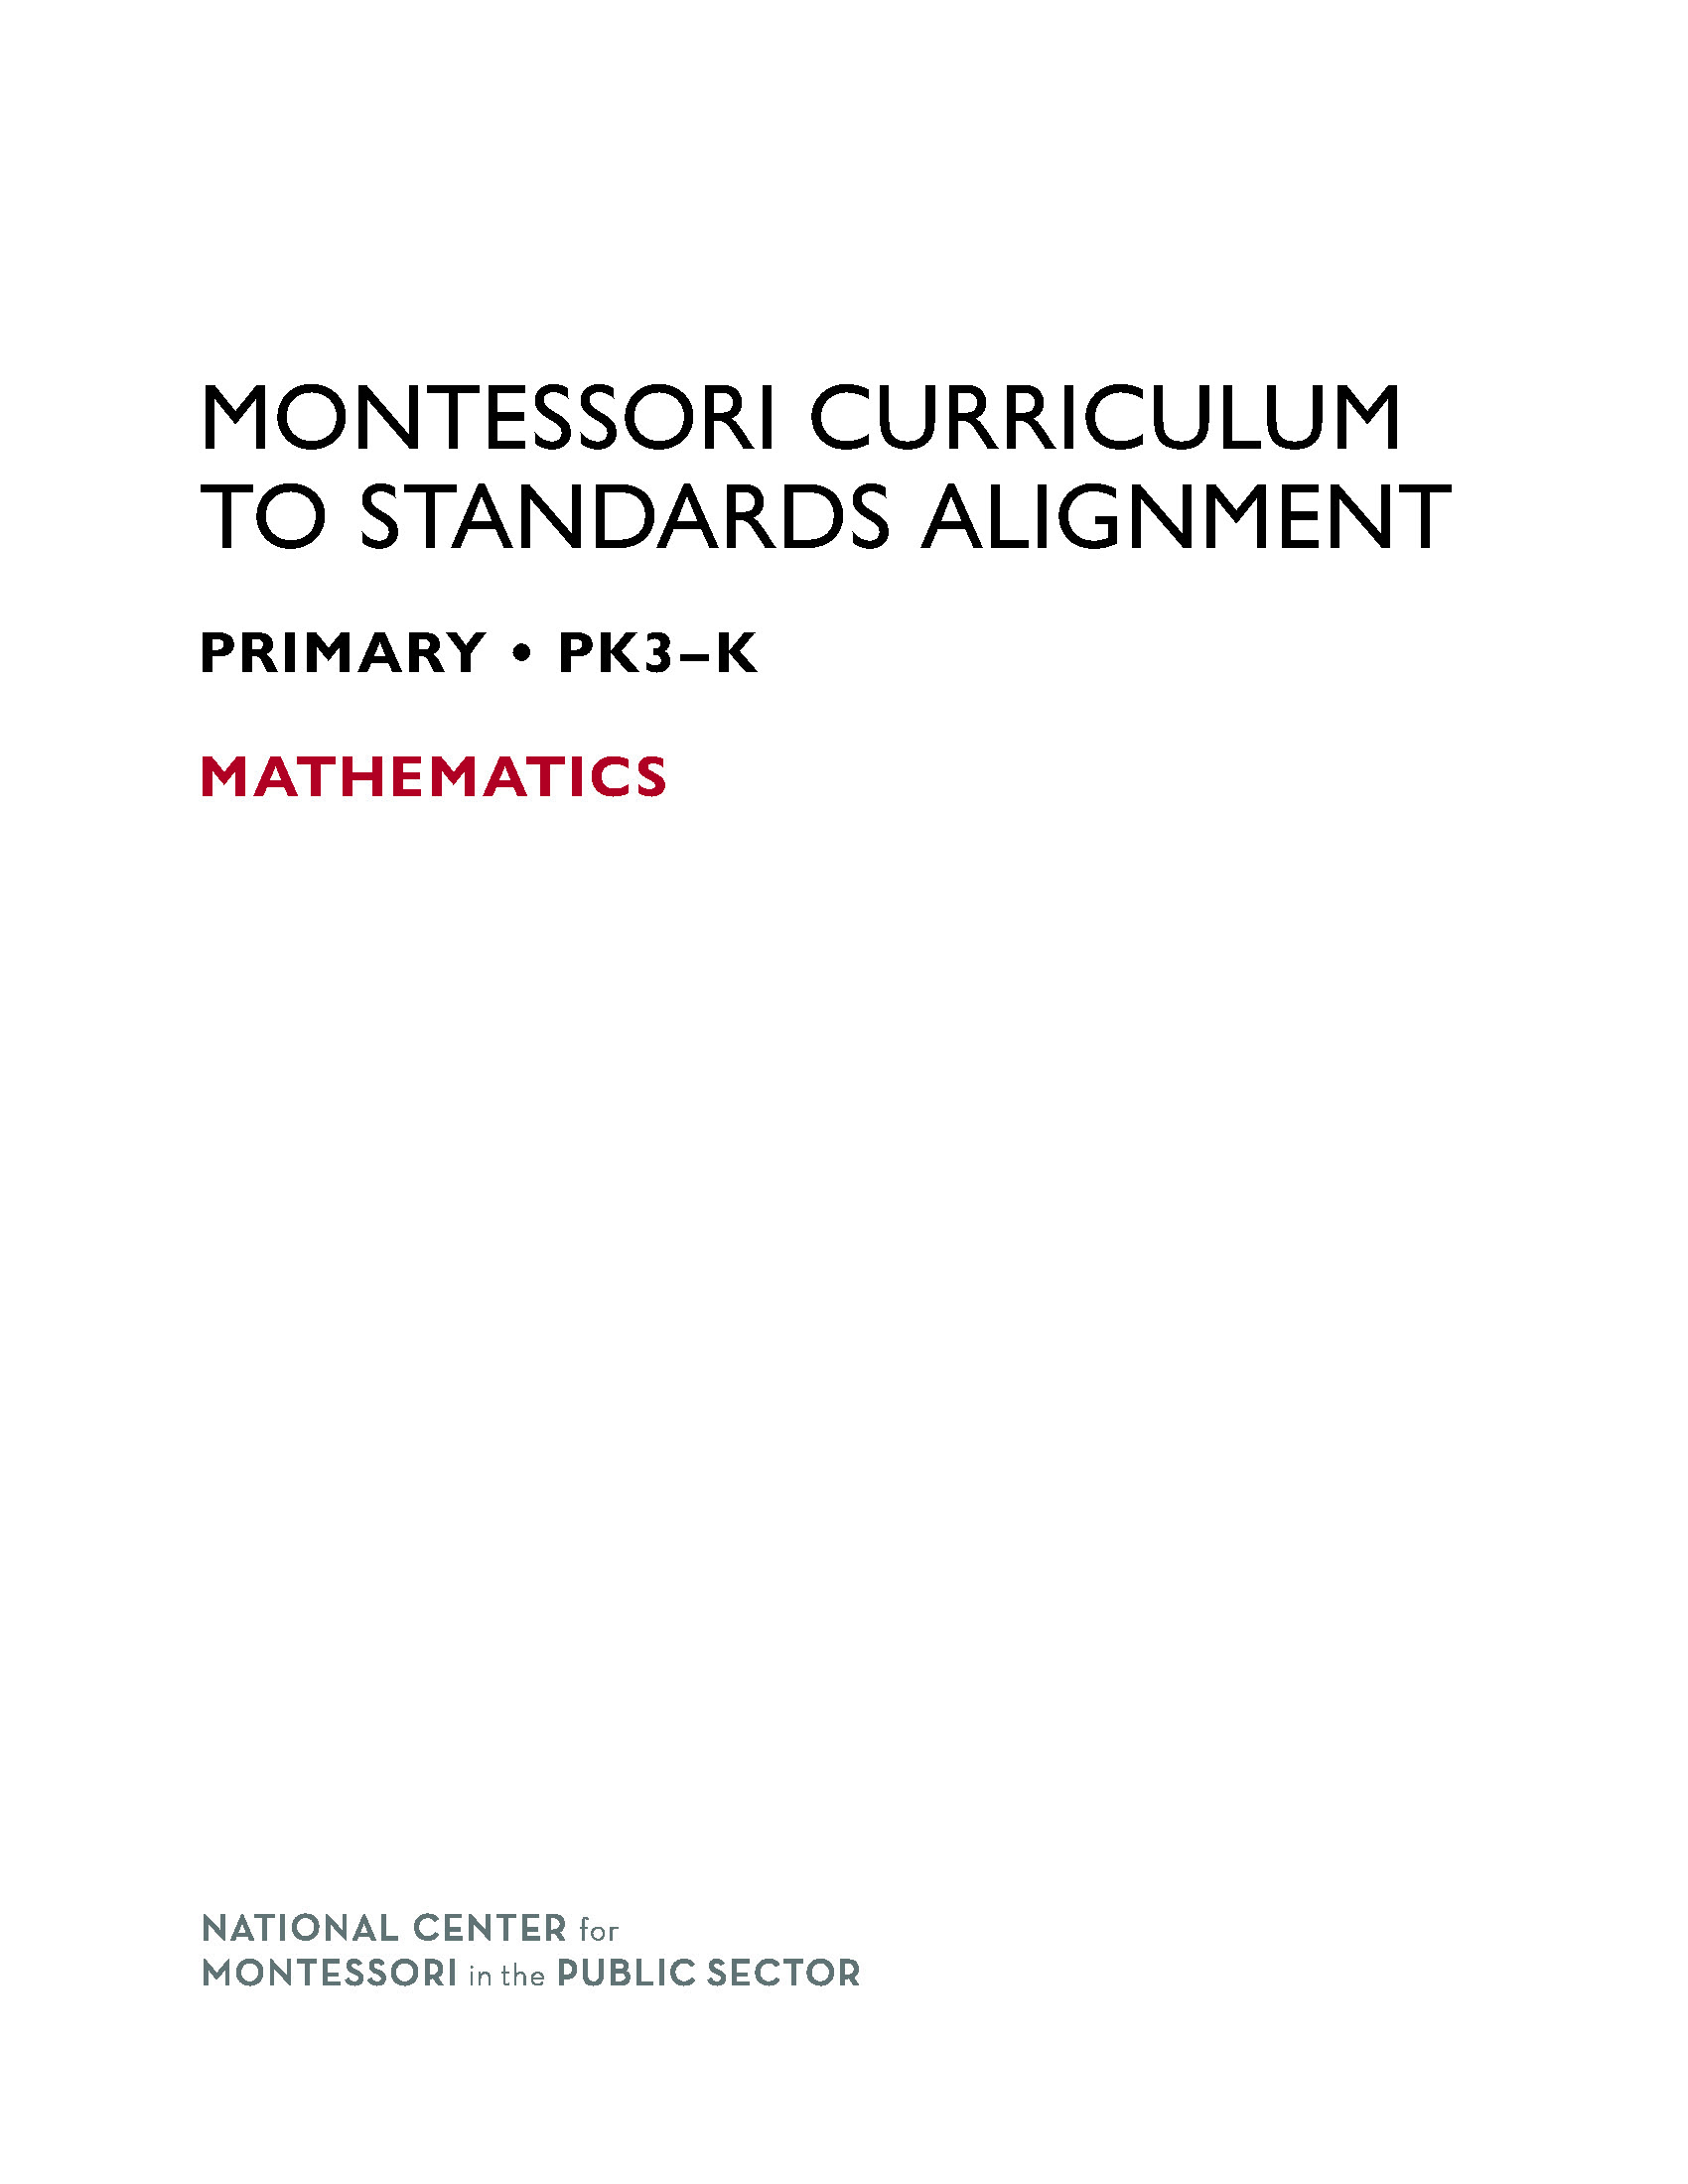 Montessori Curriculum to Standards Alignment Volume 1